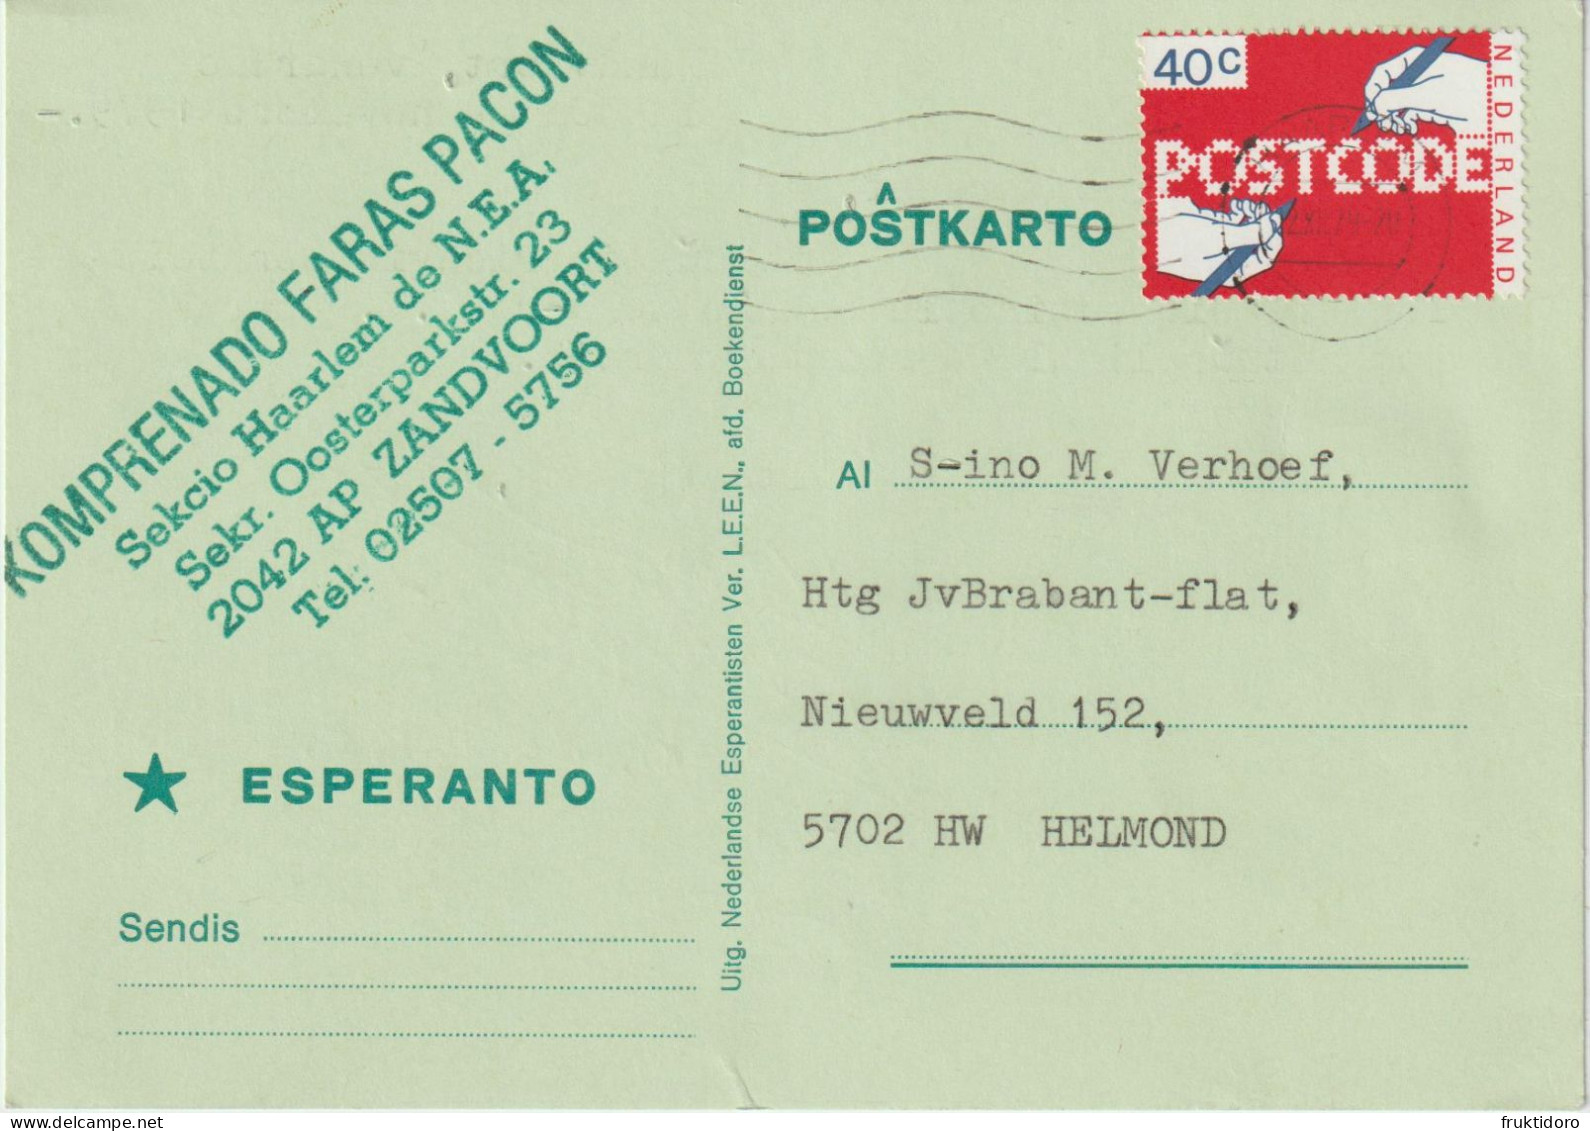 AKEO 79 Esperanto Card From The Netherlands - Text In Esperanto - Circulated - Esperanto